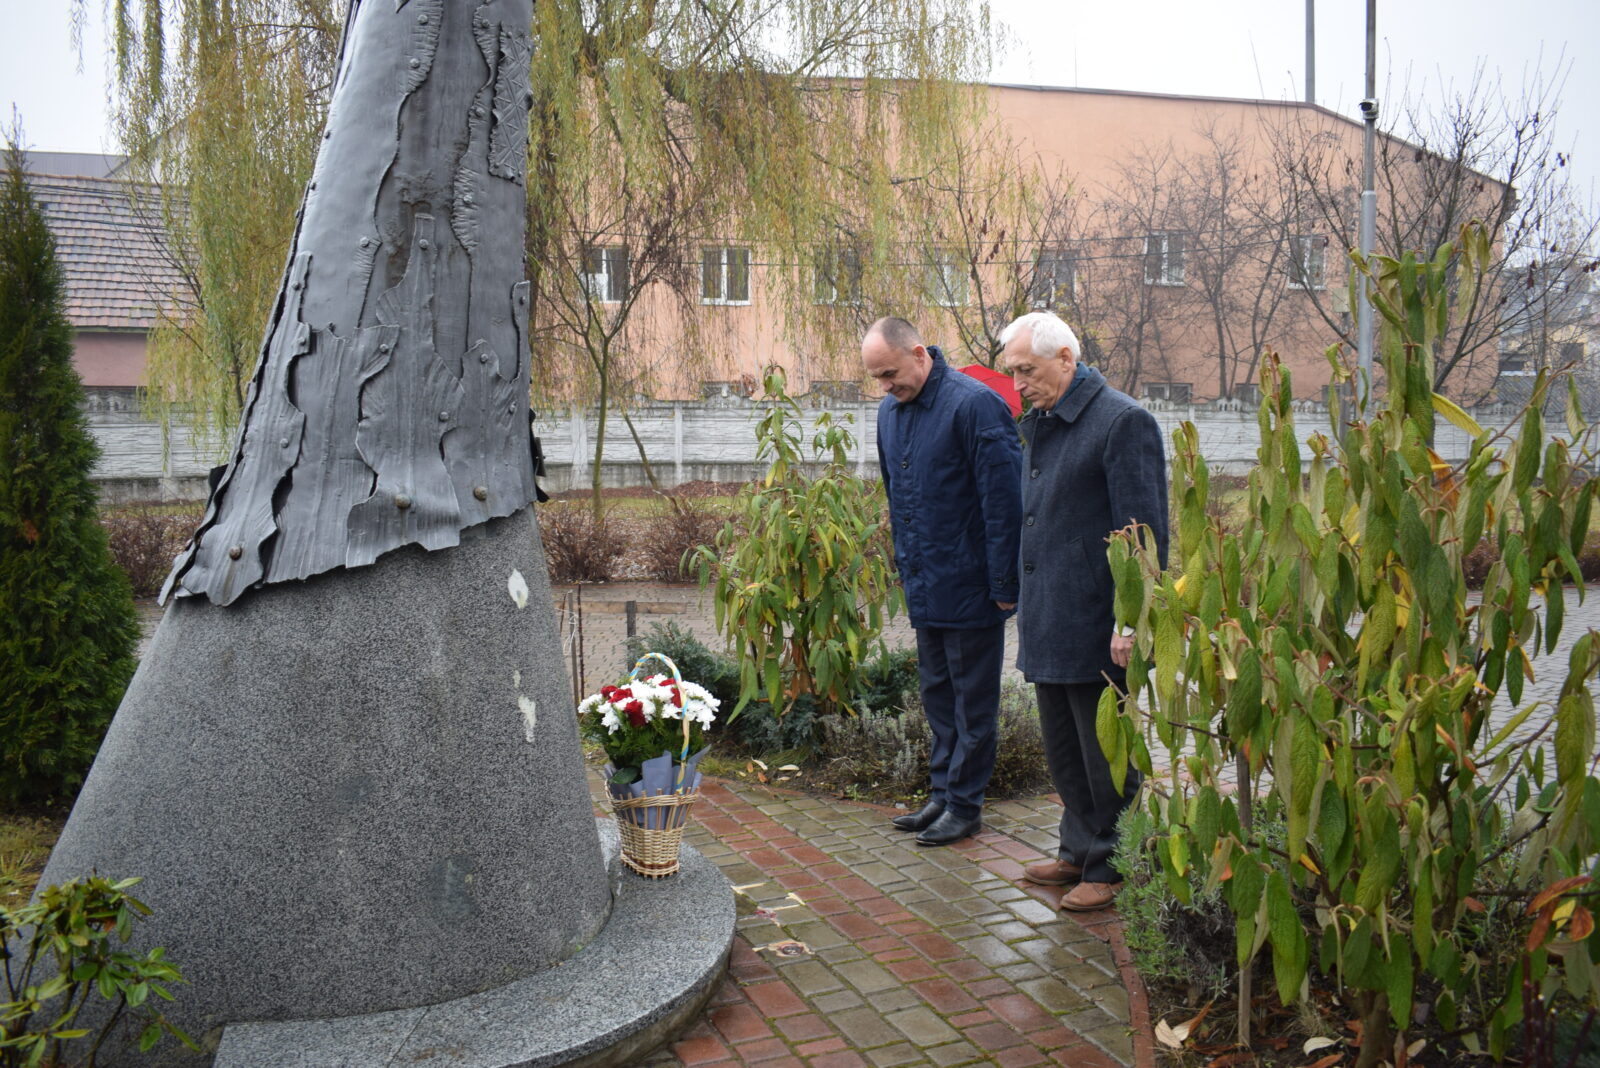 Сегодня, 19 ноября, в Хусте в центральном городском парке имени «Героев Майдана» возле памятника Небесной сотне традиционно собралось руководство Хустской области, чтобы почтить память патриотов.